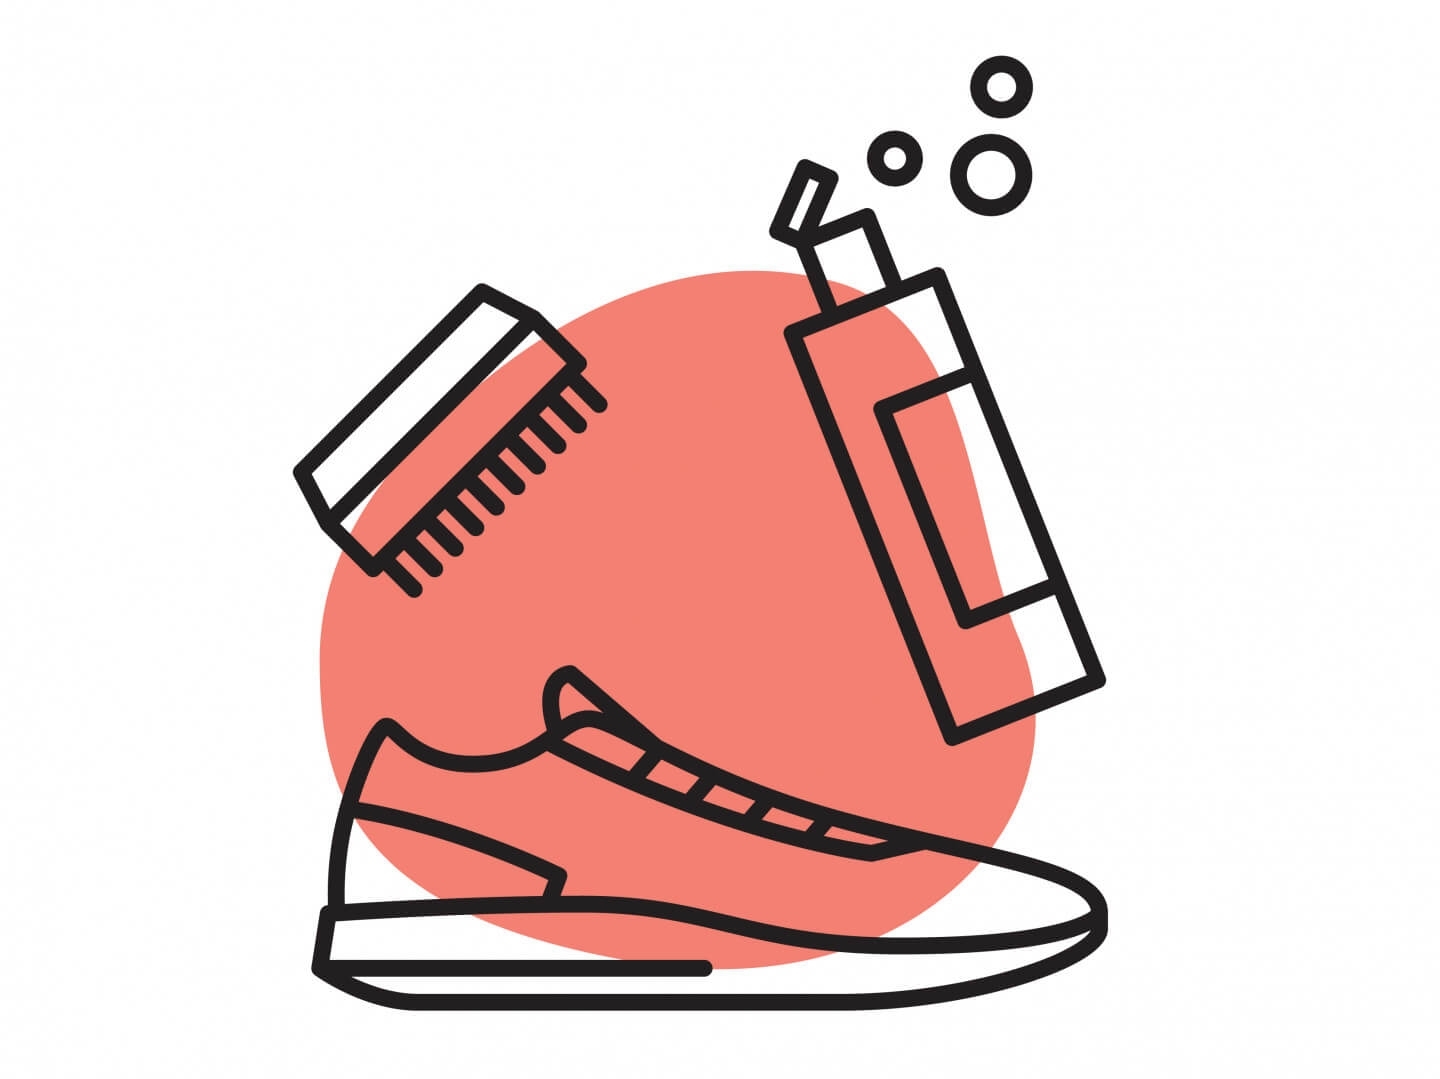 Как почистить белые кроссовки: секреты и лайфхаки